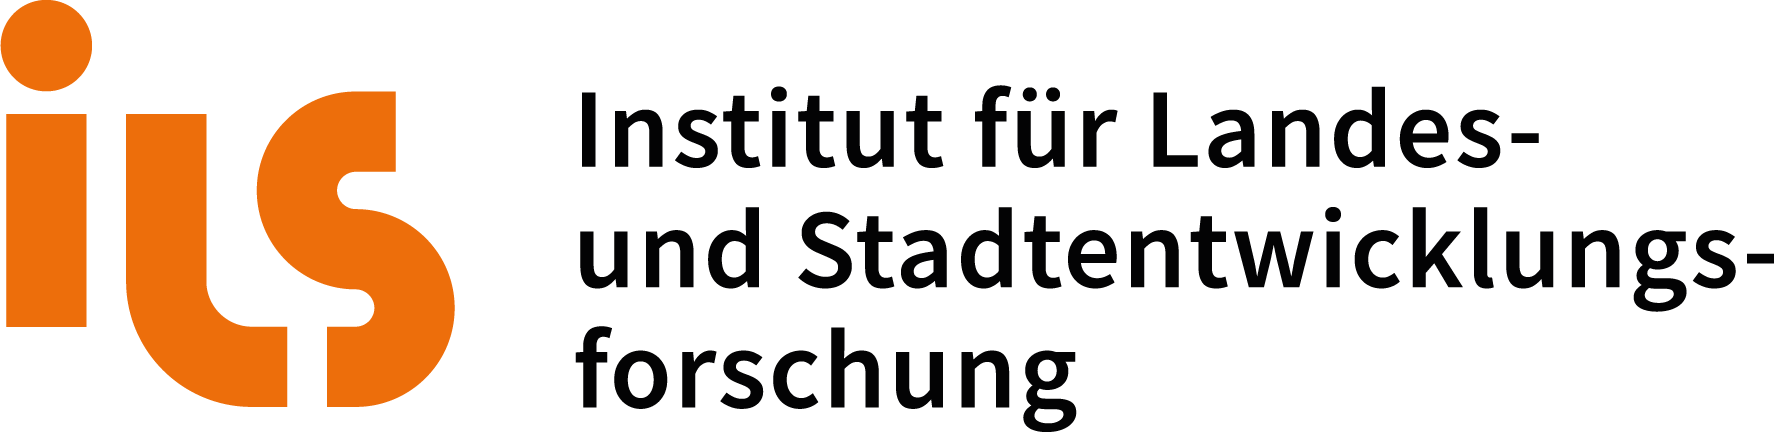 ILS – Institut für Landes- und Stadtentwicklungsforschung Logo